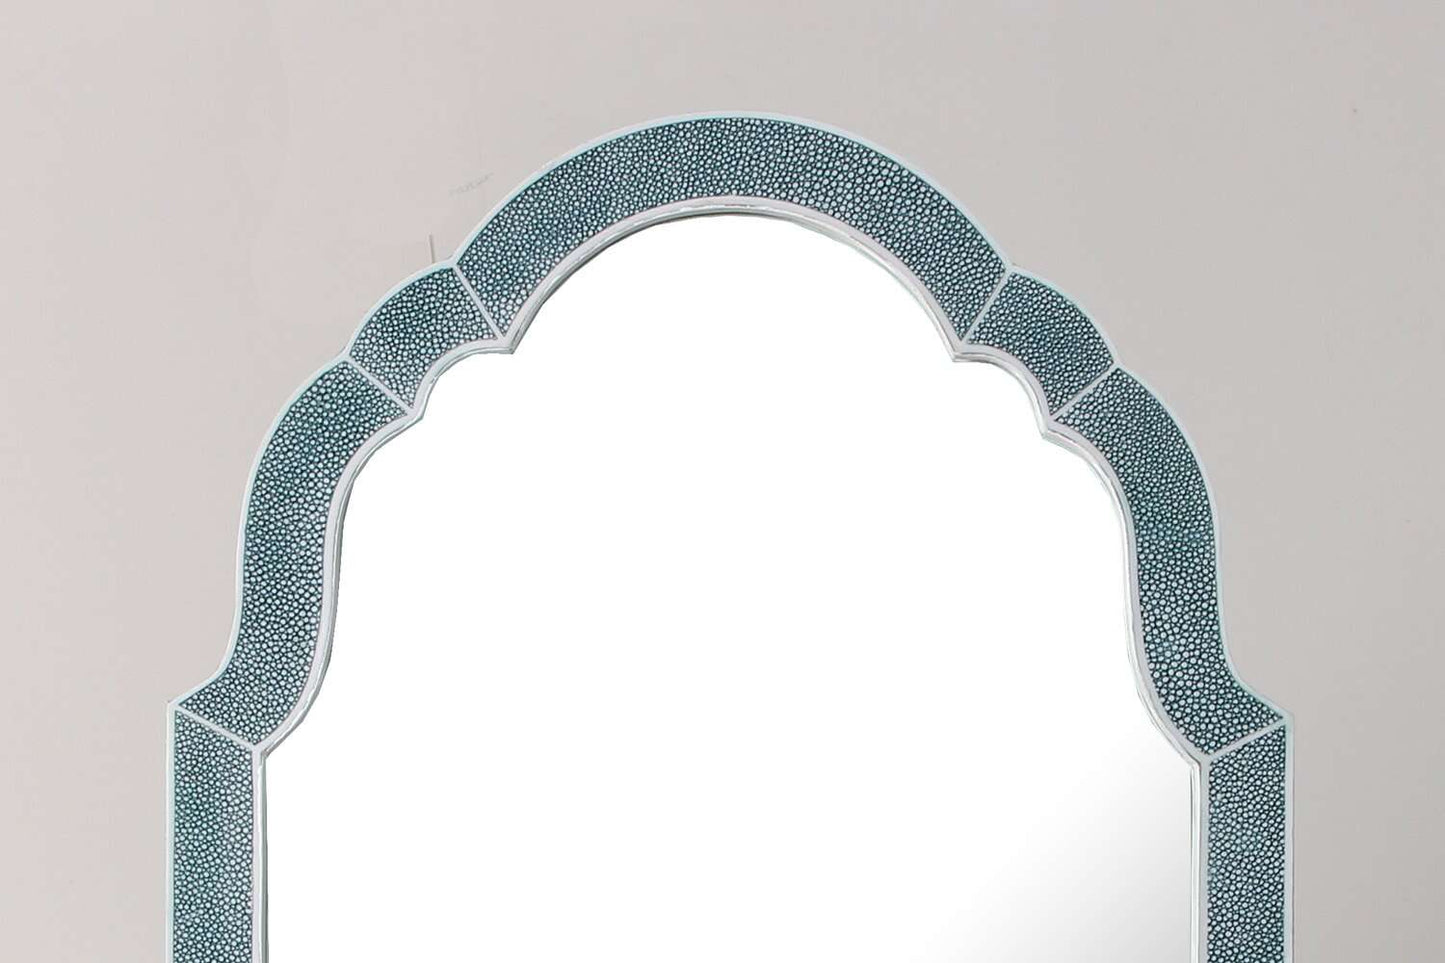  https://forwooddesign.com/app/uploads/2019/07/Teal-shagreen-dressing-table-mirror-4.jpg